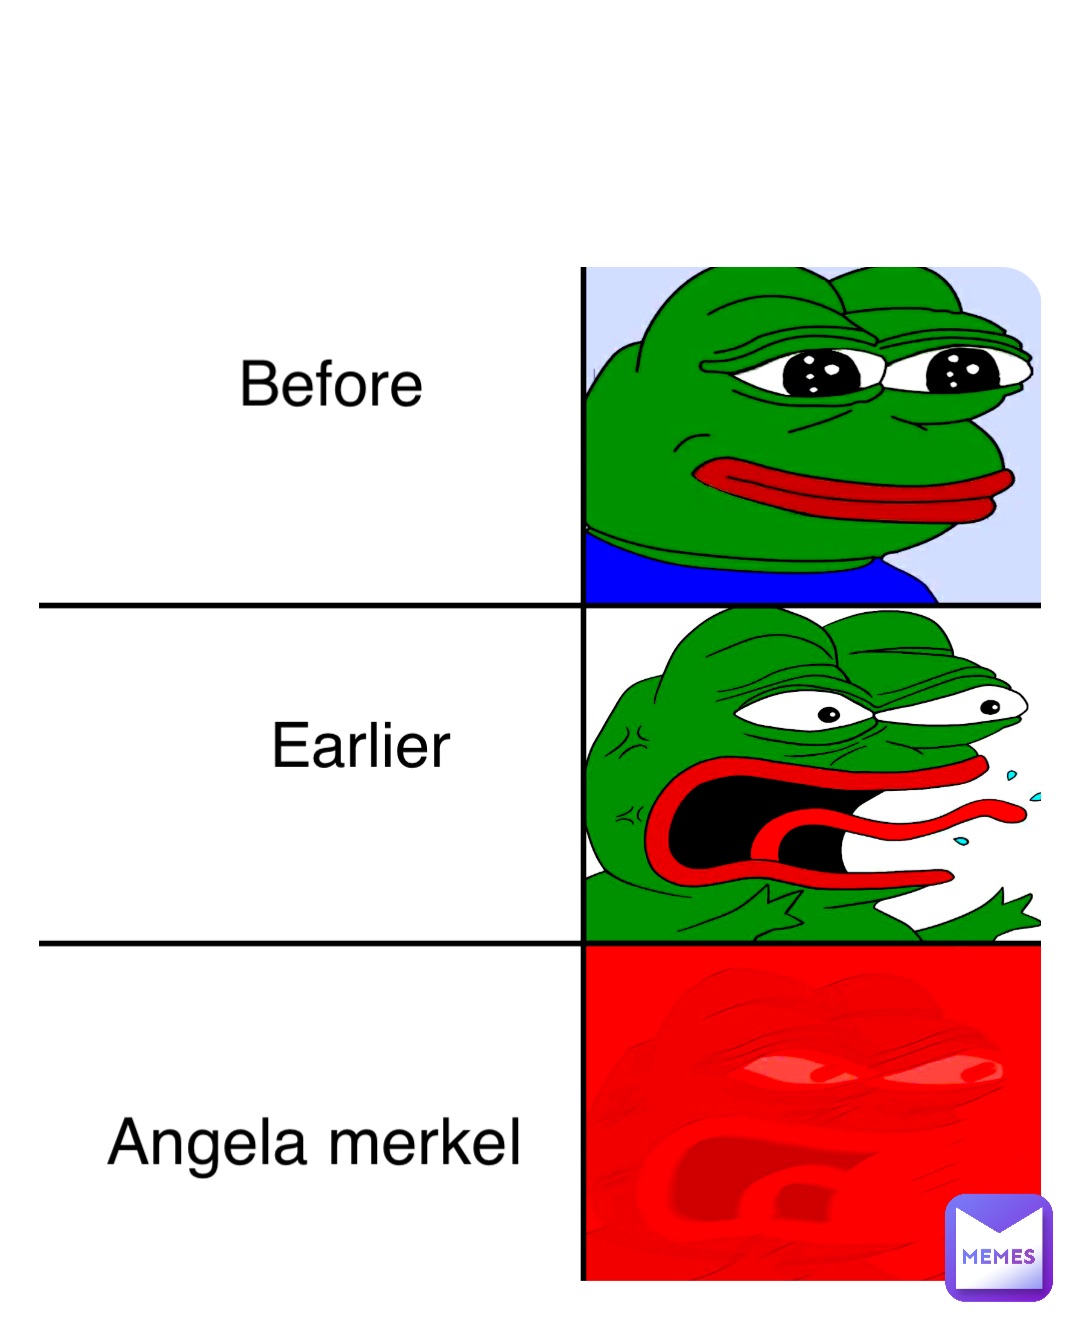 What Germans think about flood🇩🇪🇩🇪🇩🇪🇩🇪🇩🇪🇩🇪🇩🇪🇩🇪🇩🇪🇩🇪🇩🇪🇩🇪🇩🇪🇩🇪🇩🇪🇩🇪🇩🇪🇩🇪 Before Earlier Angela merkel